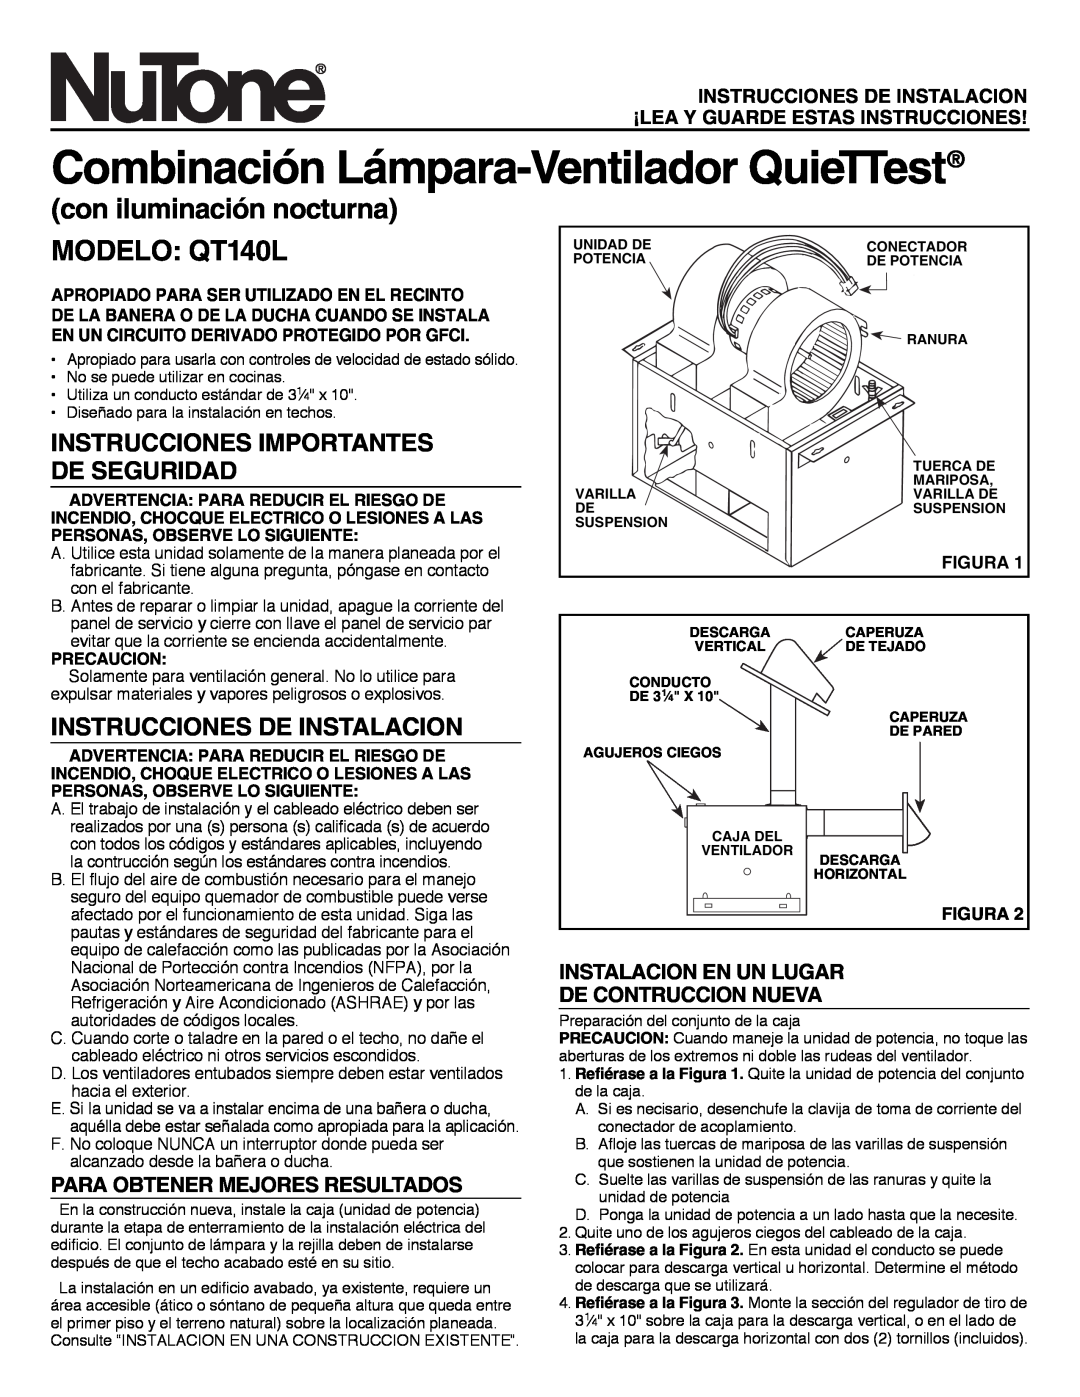 NuTone Combinación Lámpara-VentiladorQuieTTest, con iluminación nocturna MODELO QT140L, Instrucciones De Instalacion 